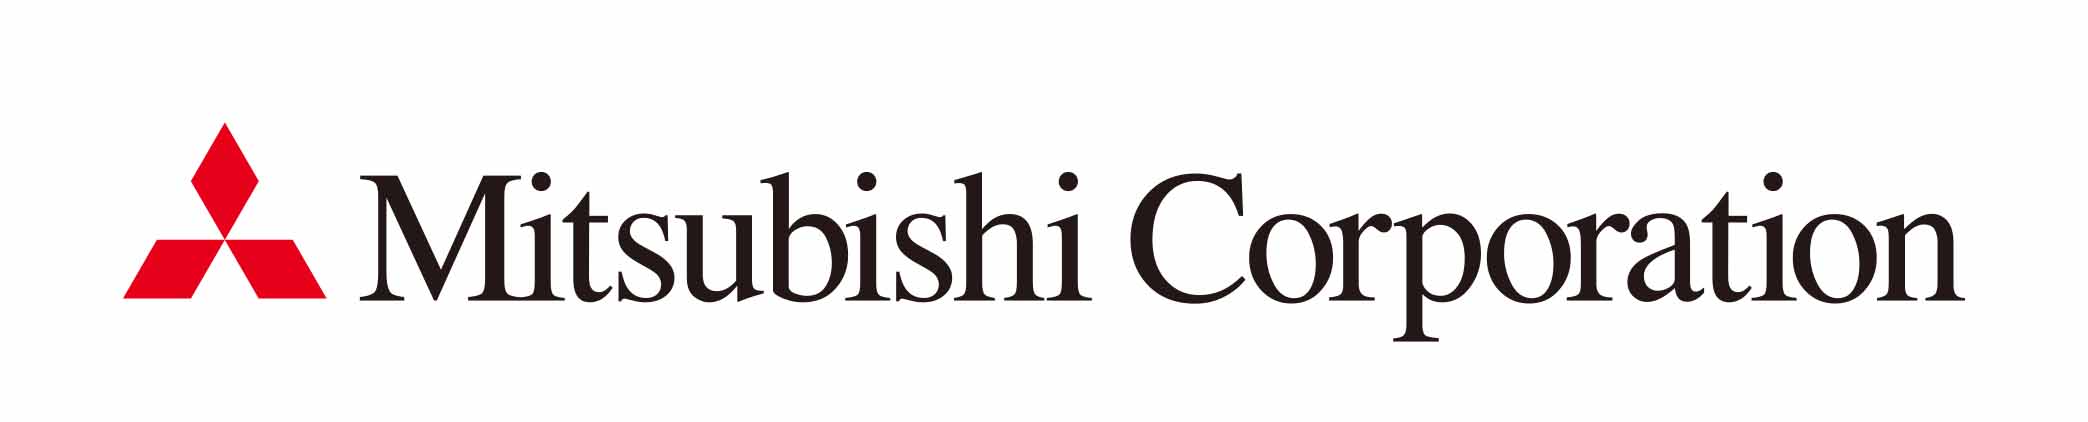 Mitsubishi corporation.jpg